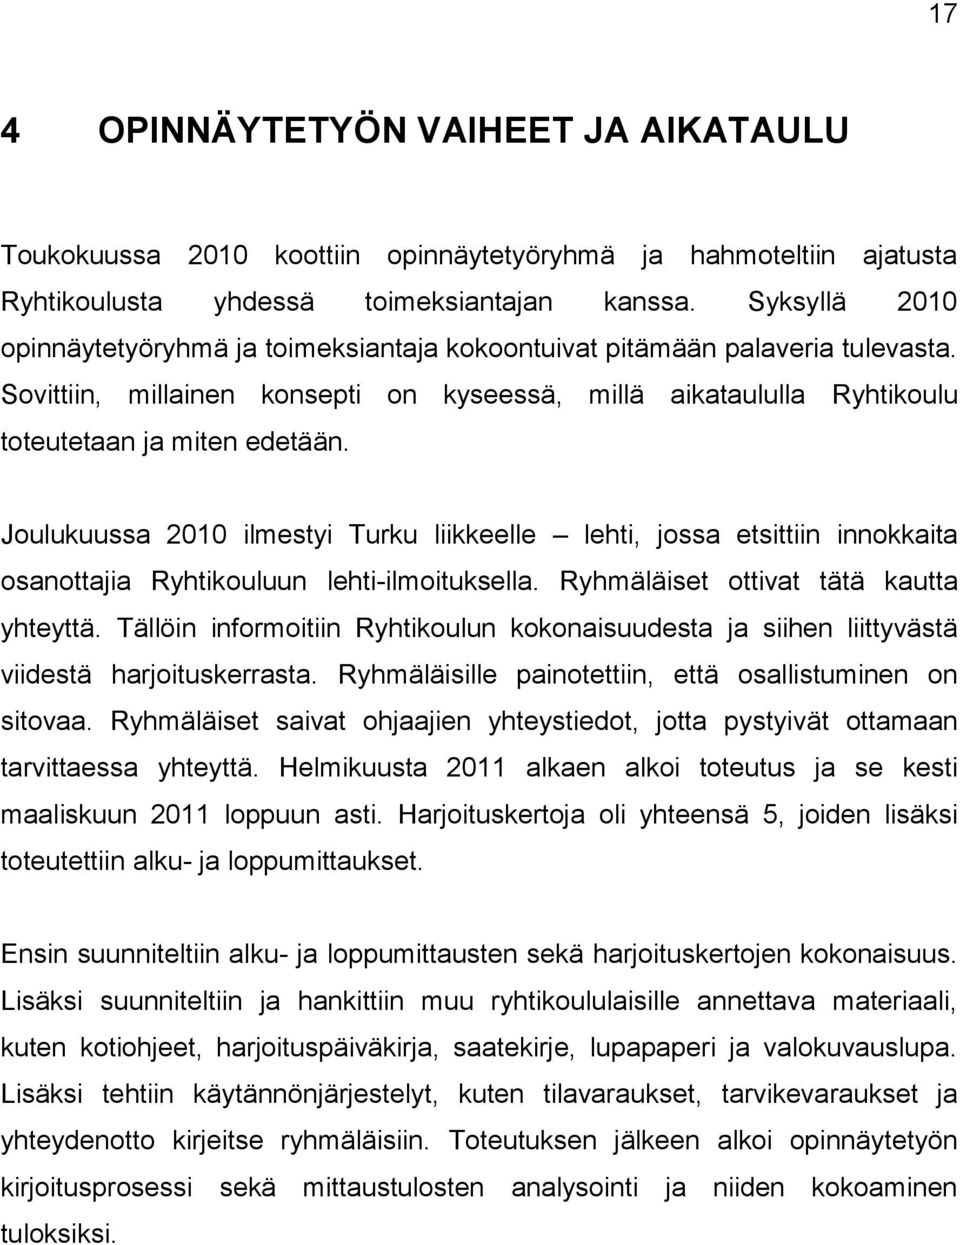 Joulukuussa 2010 ilmestyi Turku liikkeelle lehti, jossa etsittiin innokkaita osanottajia Ryhtikouluun lehti-ilmoituksella. Ryhmäläiset ottivat tätä kautta yhteyttä.